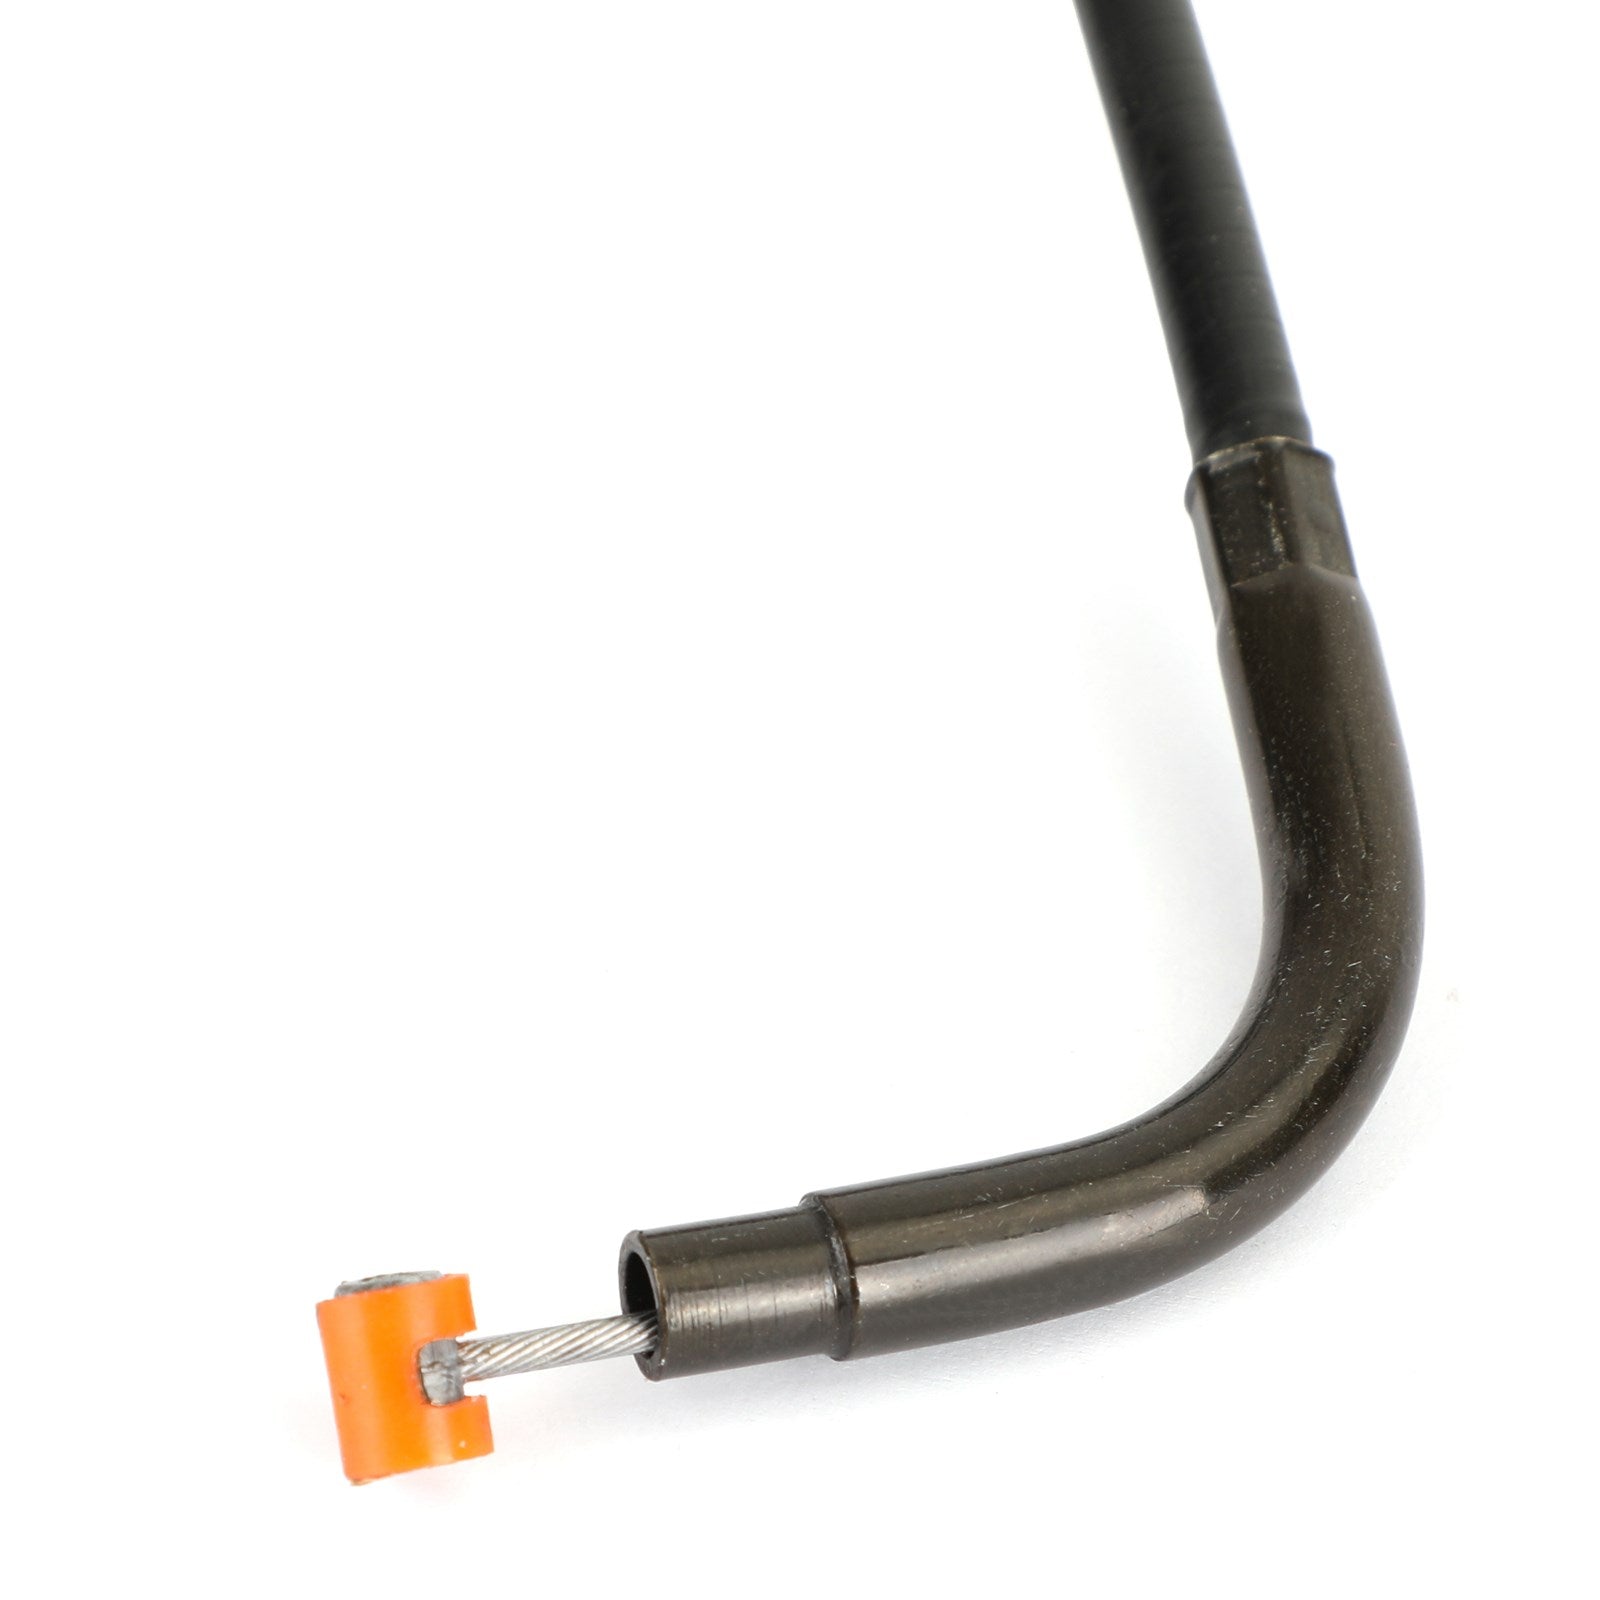 Cable de embrague de repuesto para Honda NV400 Shadow 400 98-08 VT750 97-09 genérico